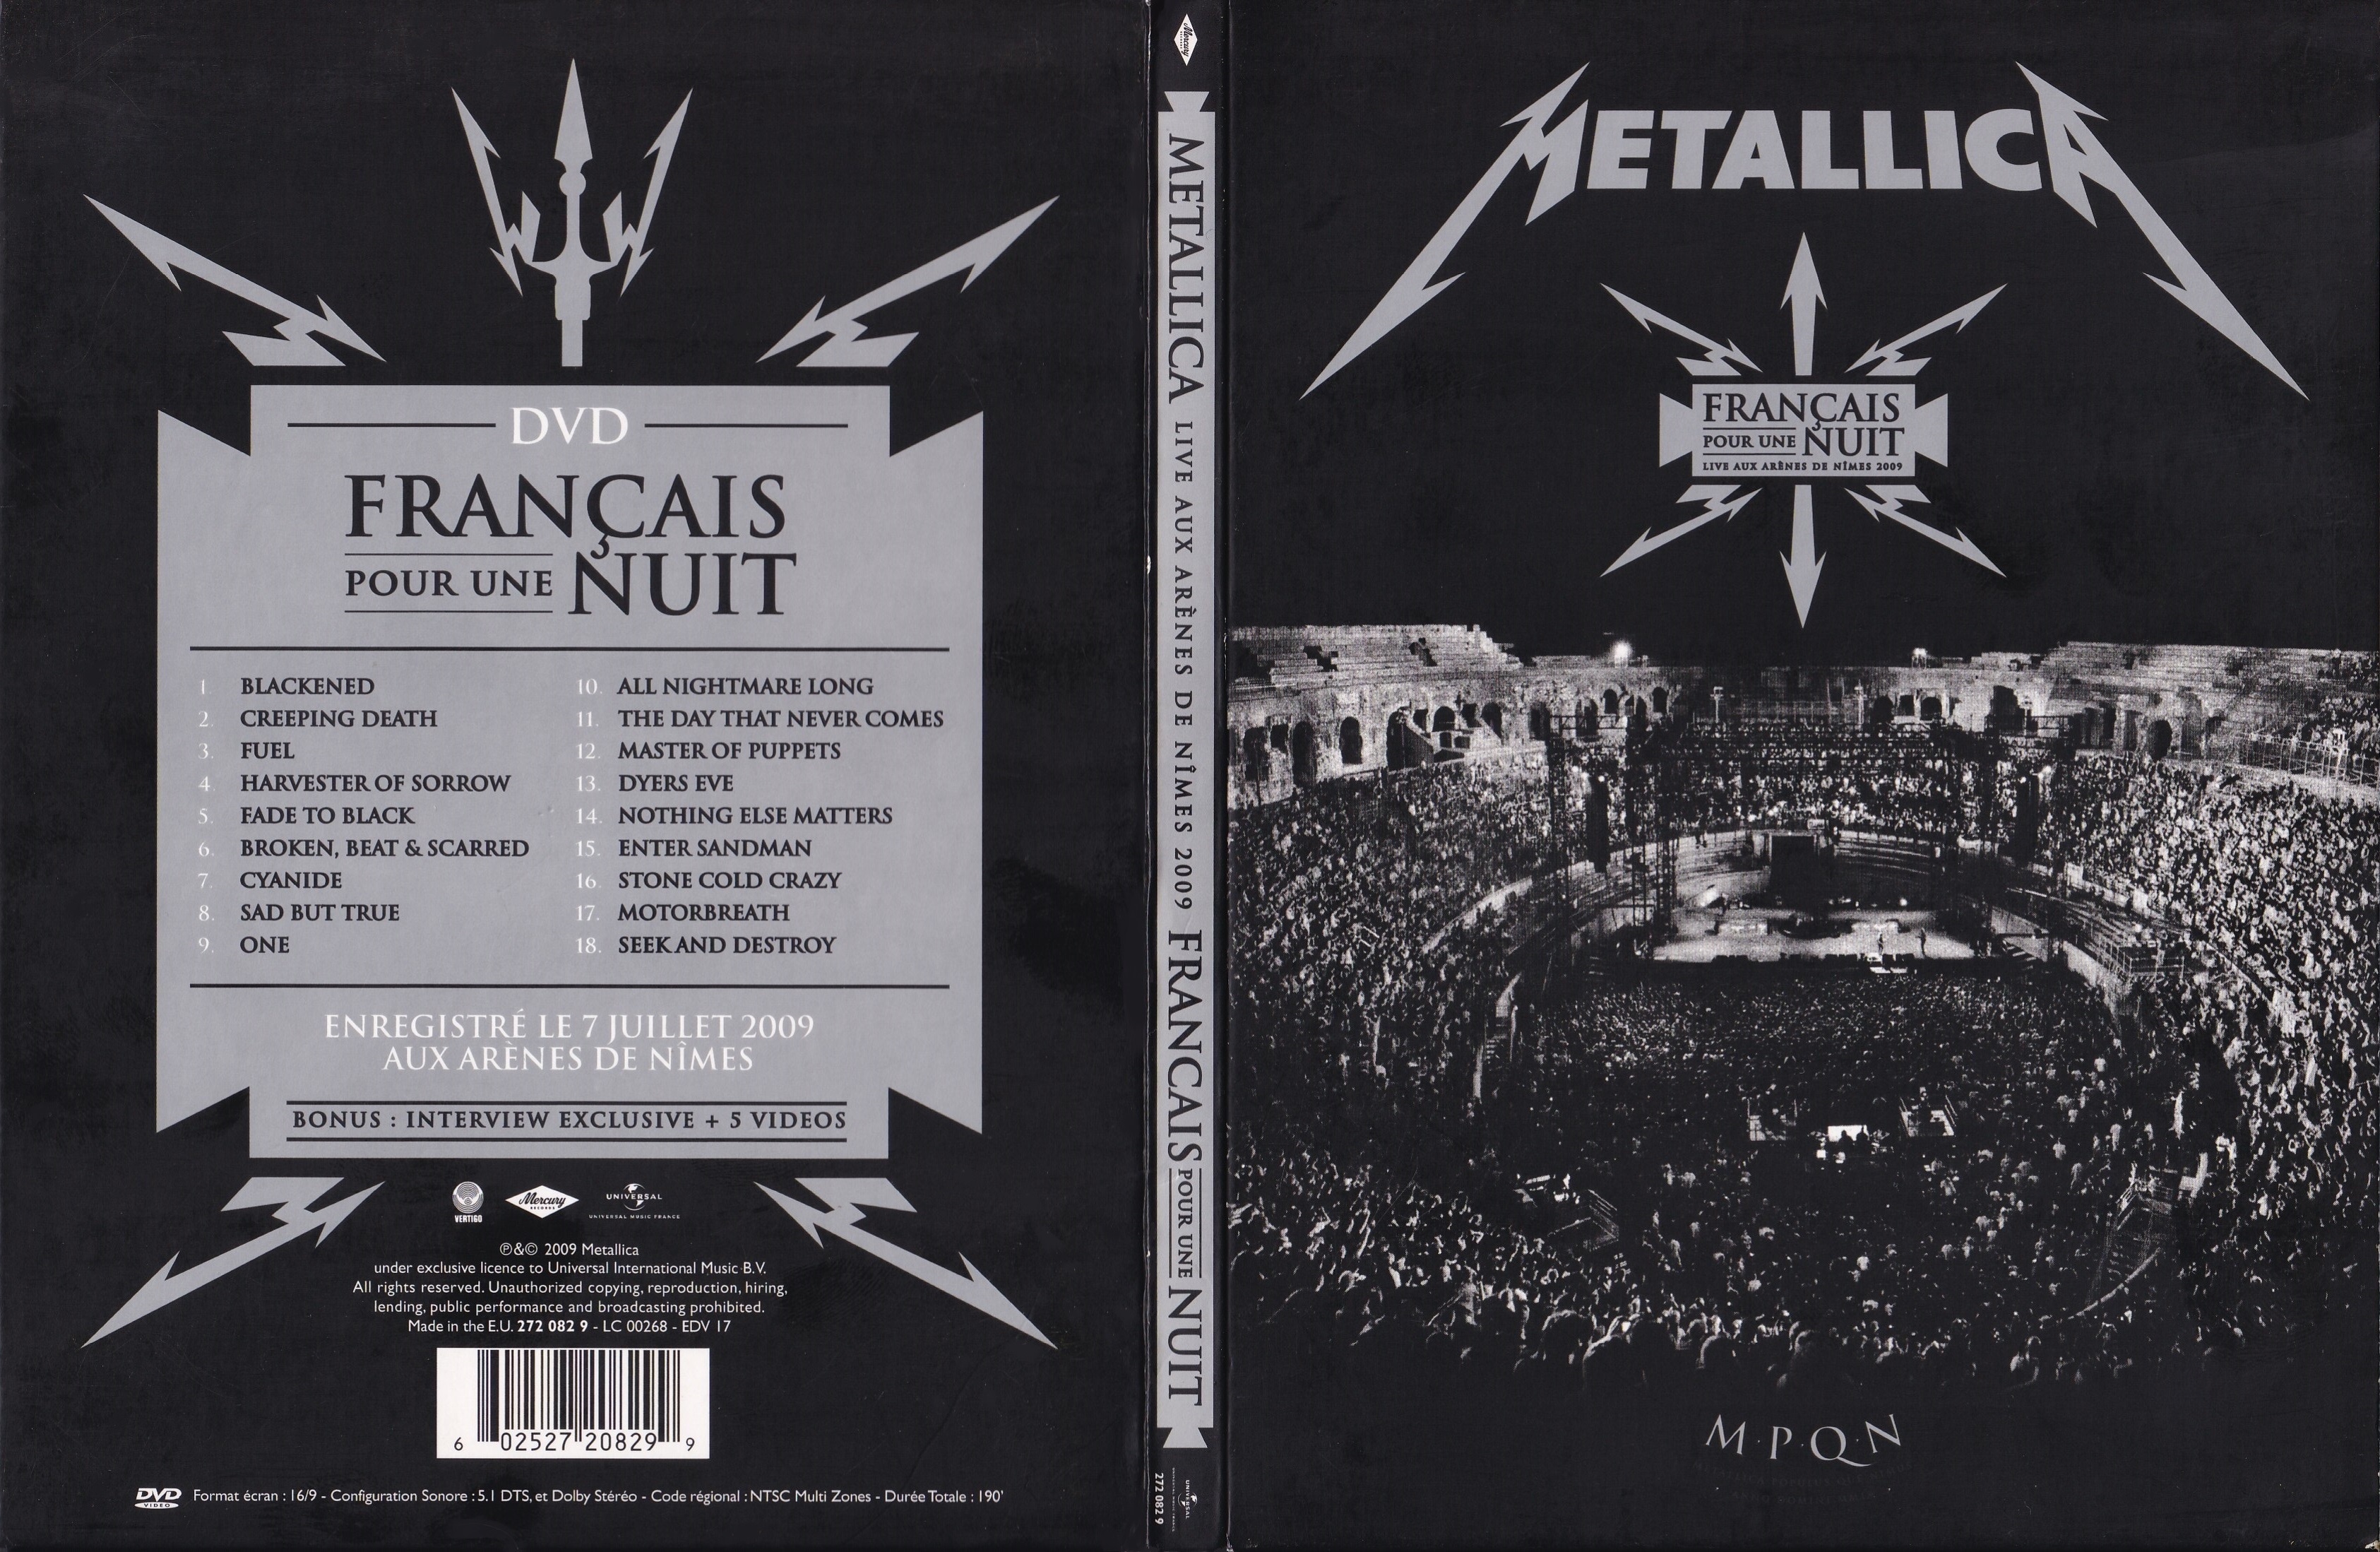 Jaquette DVD Metallica Francais pour une nuit